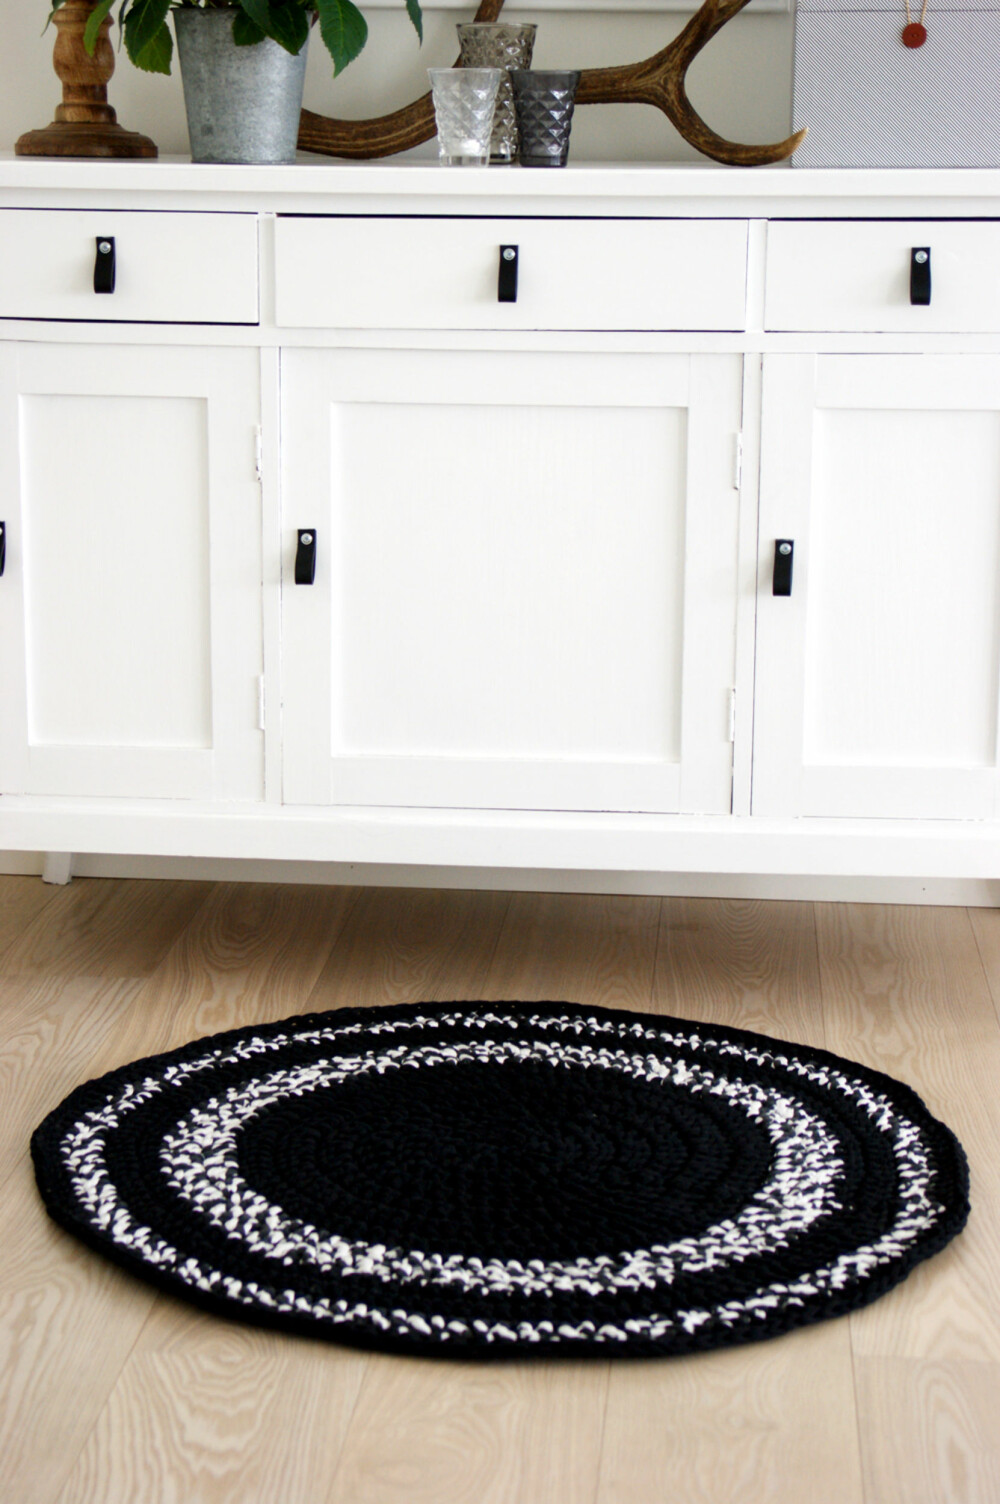 HEKLET TEPPE: Hekle ditt eget teppe med tykt garn. Perfekt til gangen eller badet.